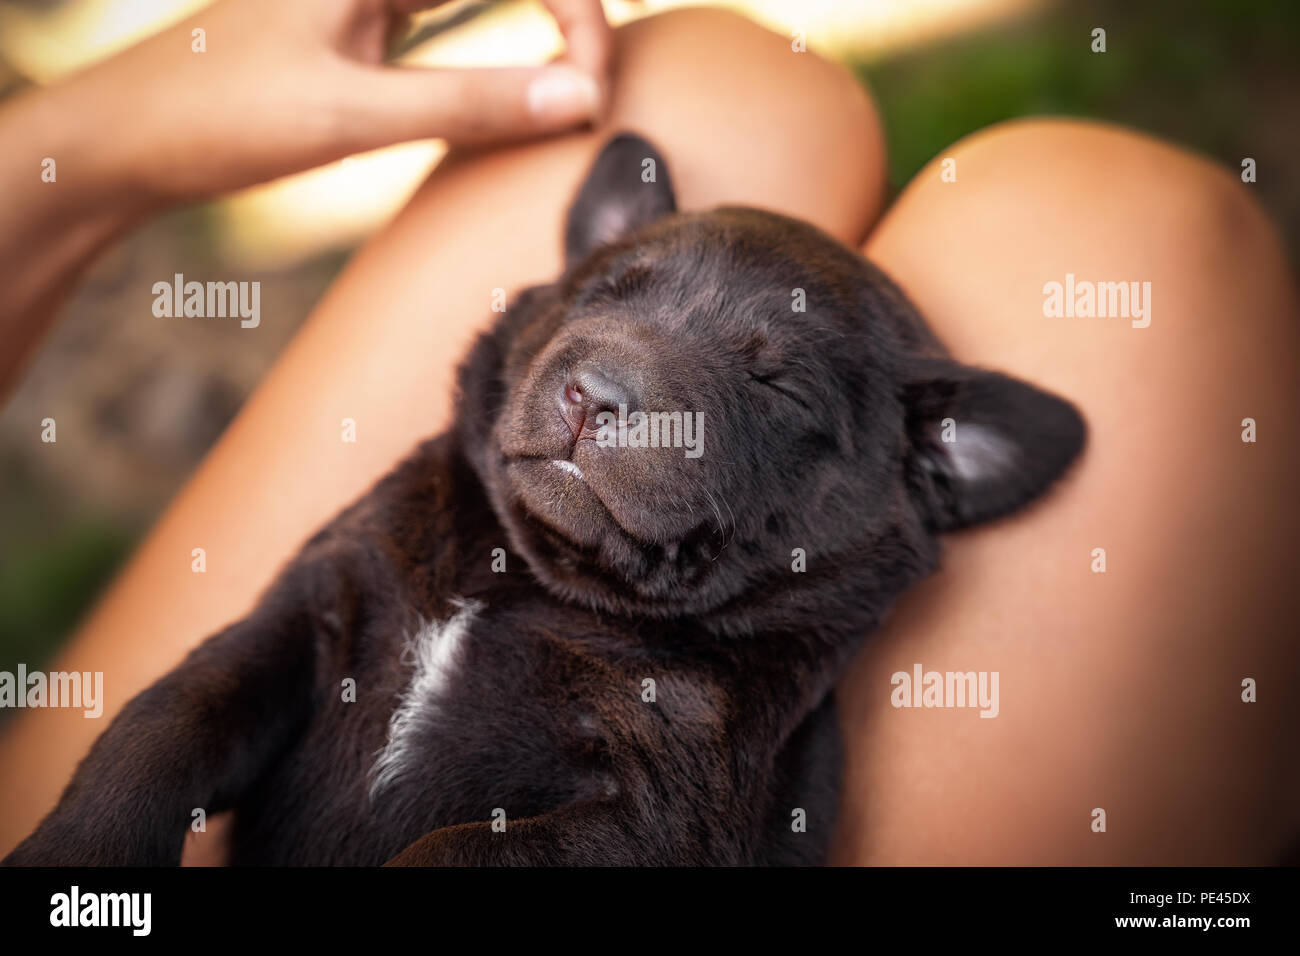 young cute labrador retriever dog puppy Stock Photo